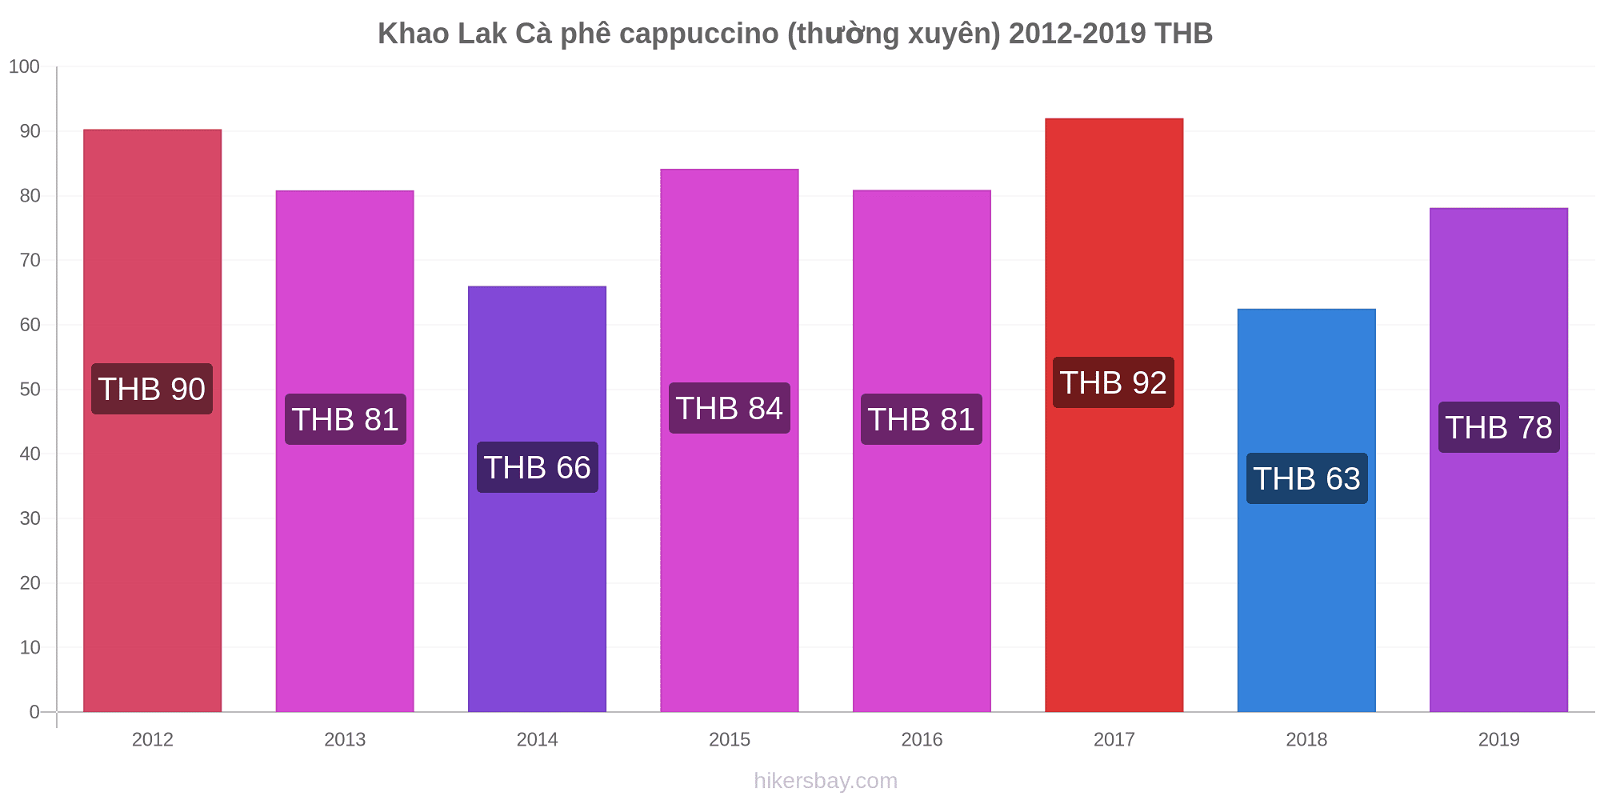 Khao Lak thay đổi giá Cà phê cappuccino (thường xuyên) hikersbay.com